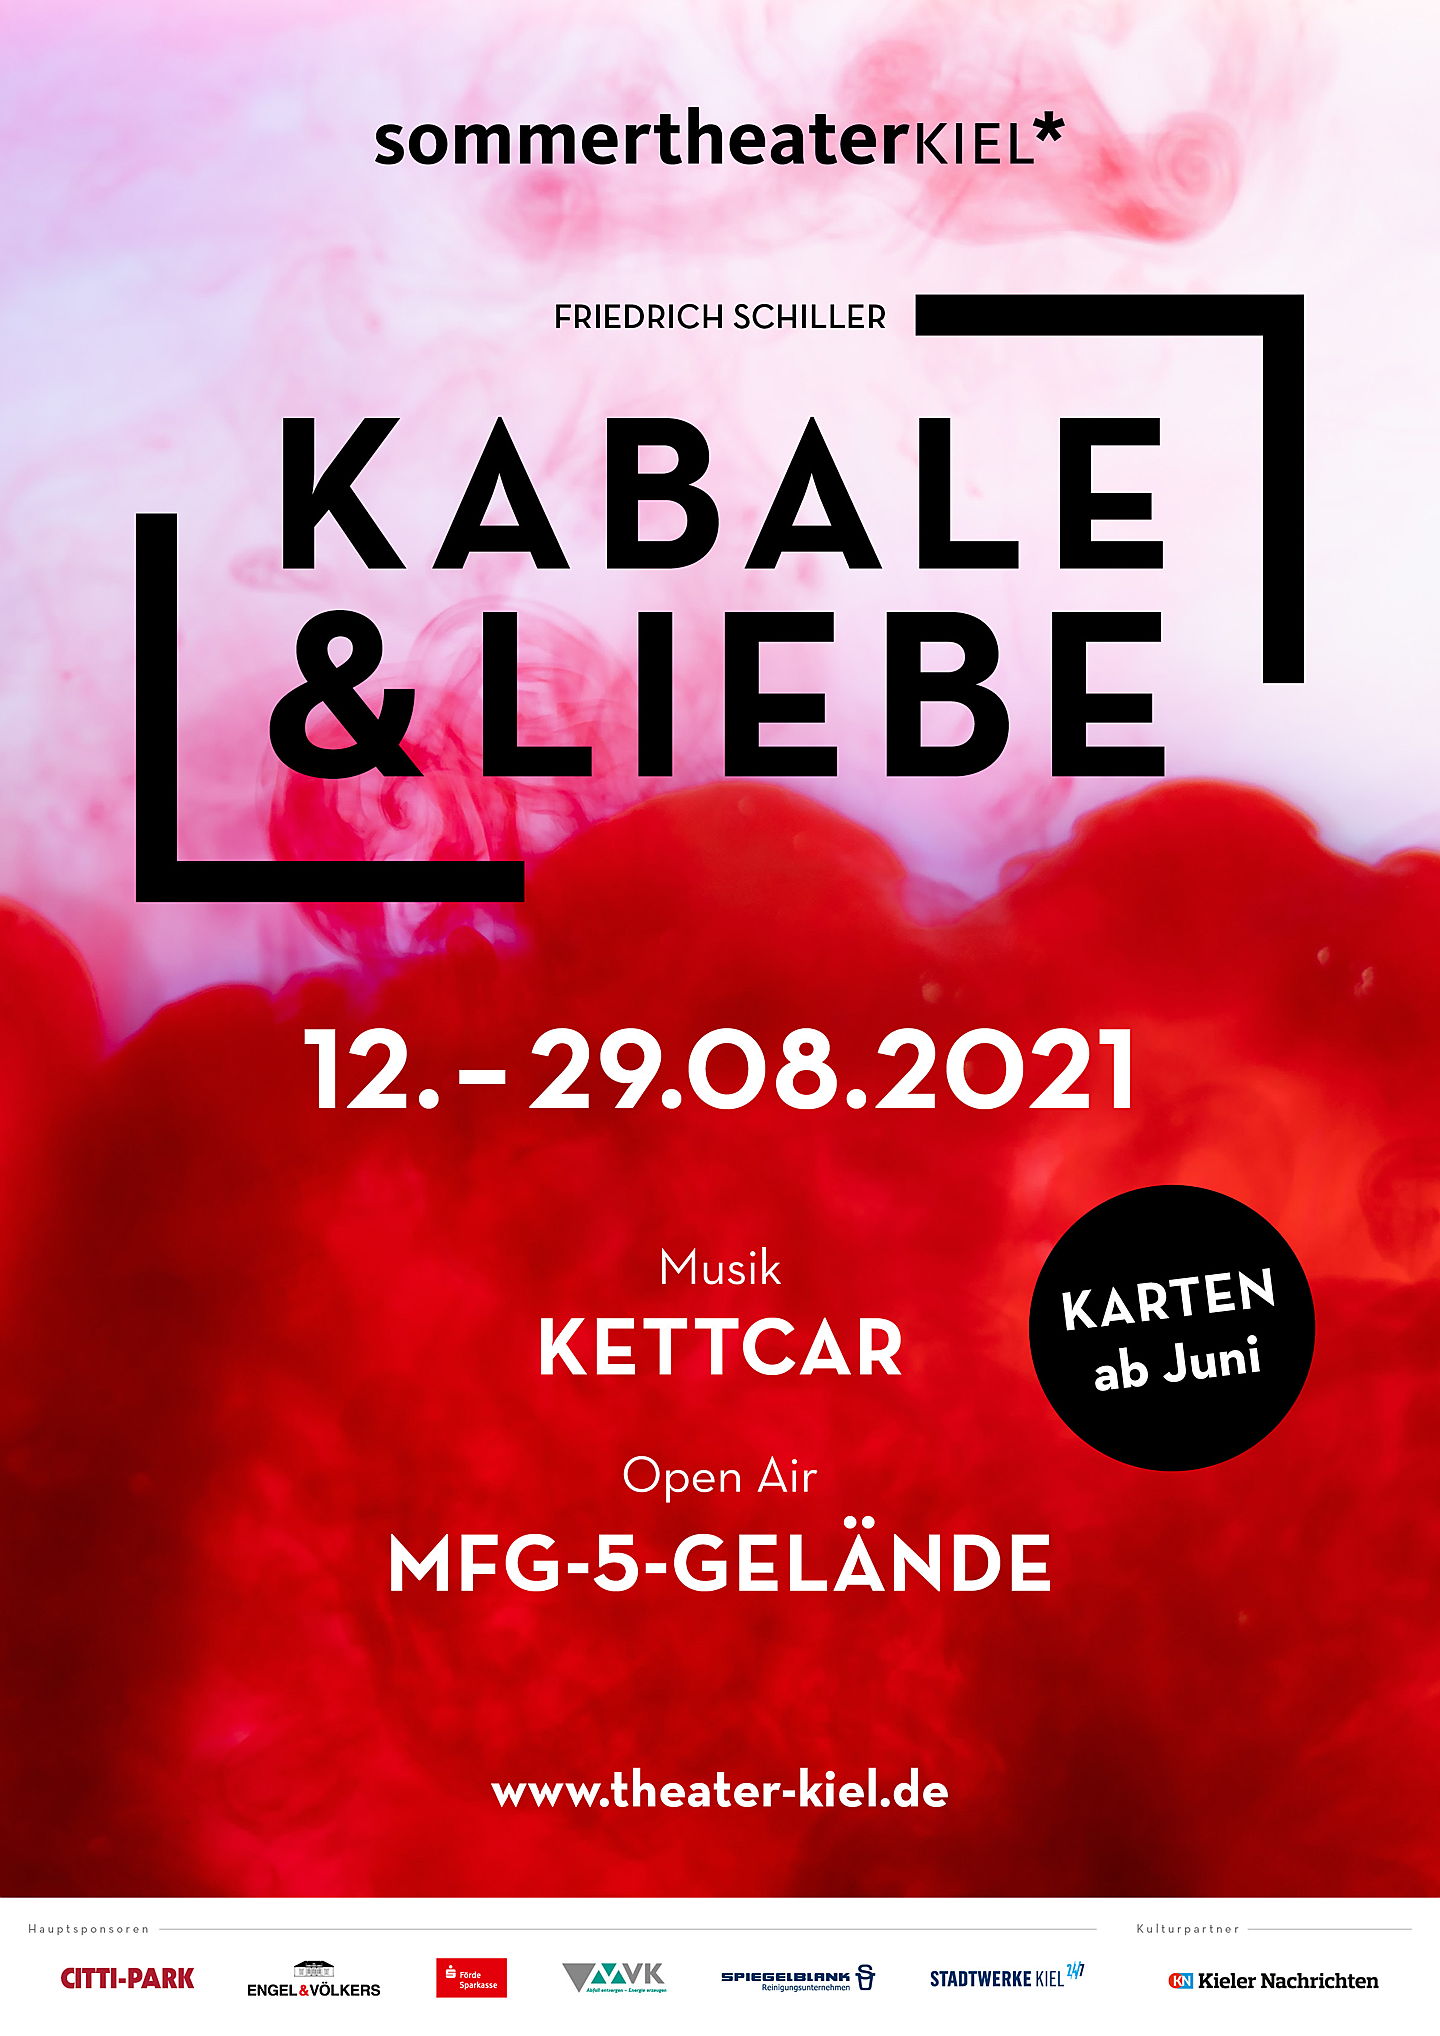  Hamburg
- Engel & Völkers Schleswig-Holstein, Sponsor des Sommertheaters in Kiel - Kabale & Liebe von Friedrich Schiller wird vom 12.-29.08.2021 im Freilufttheater spielen.